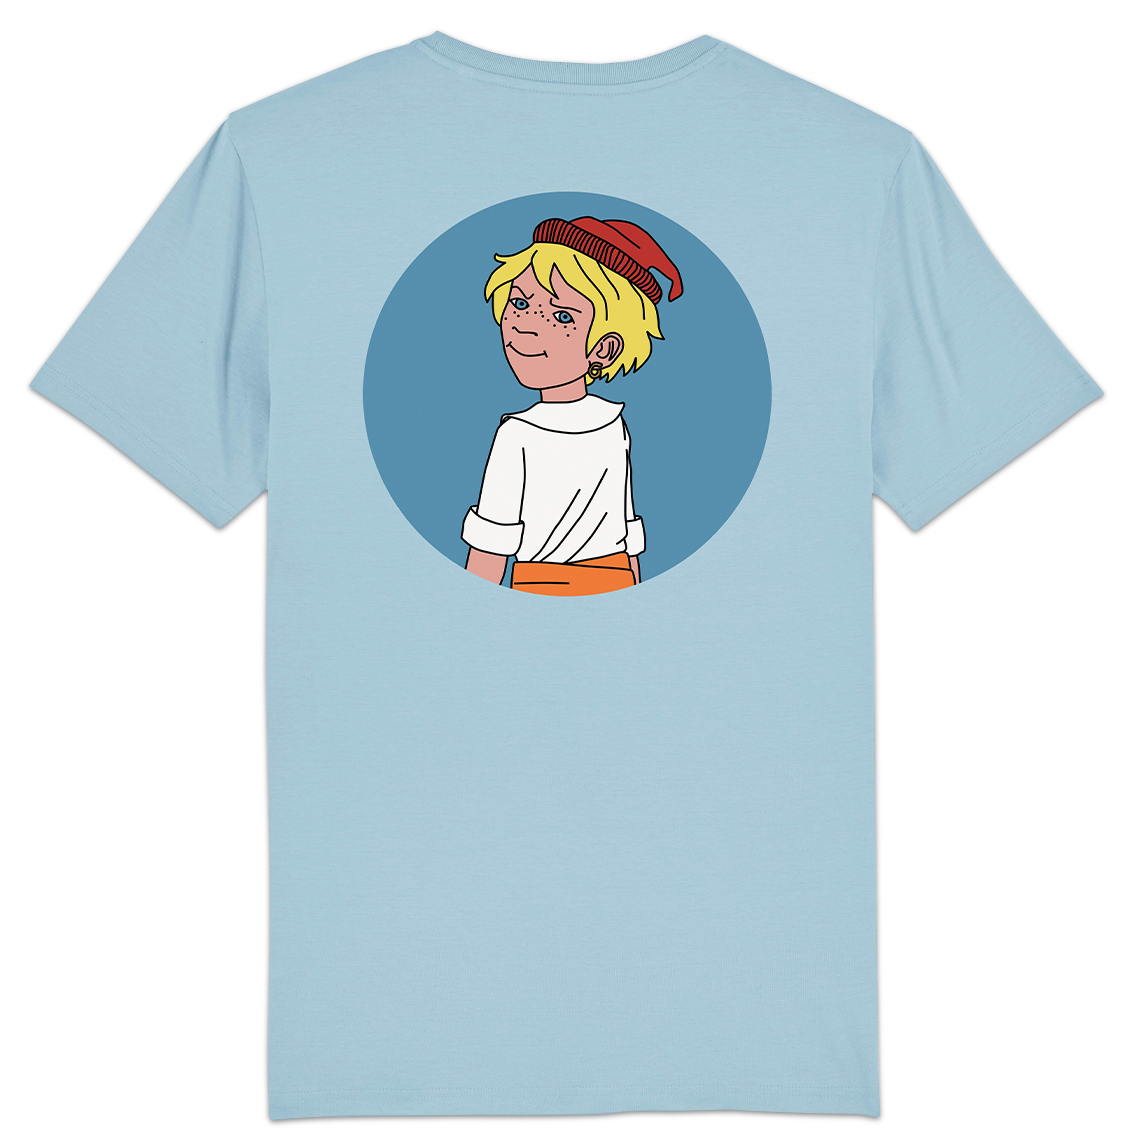 Kinder-T-Shirt "Der kleine Störtebeker" blau